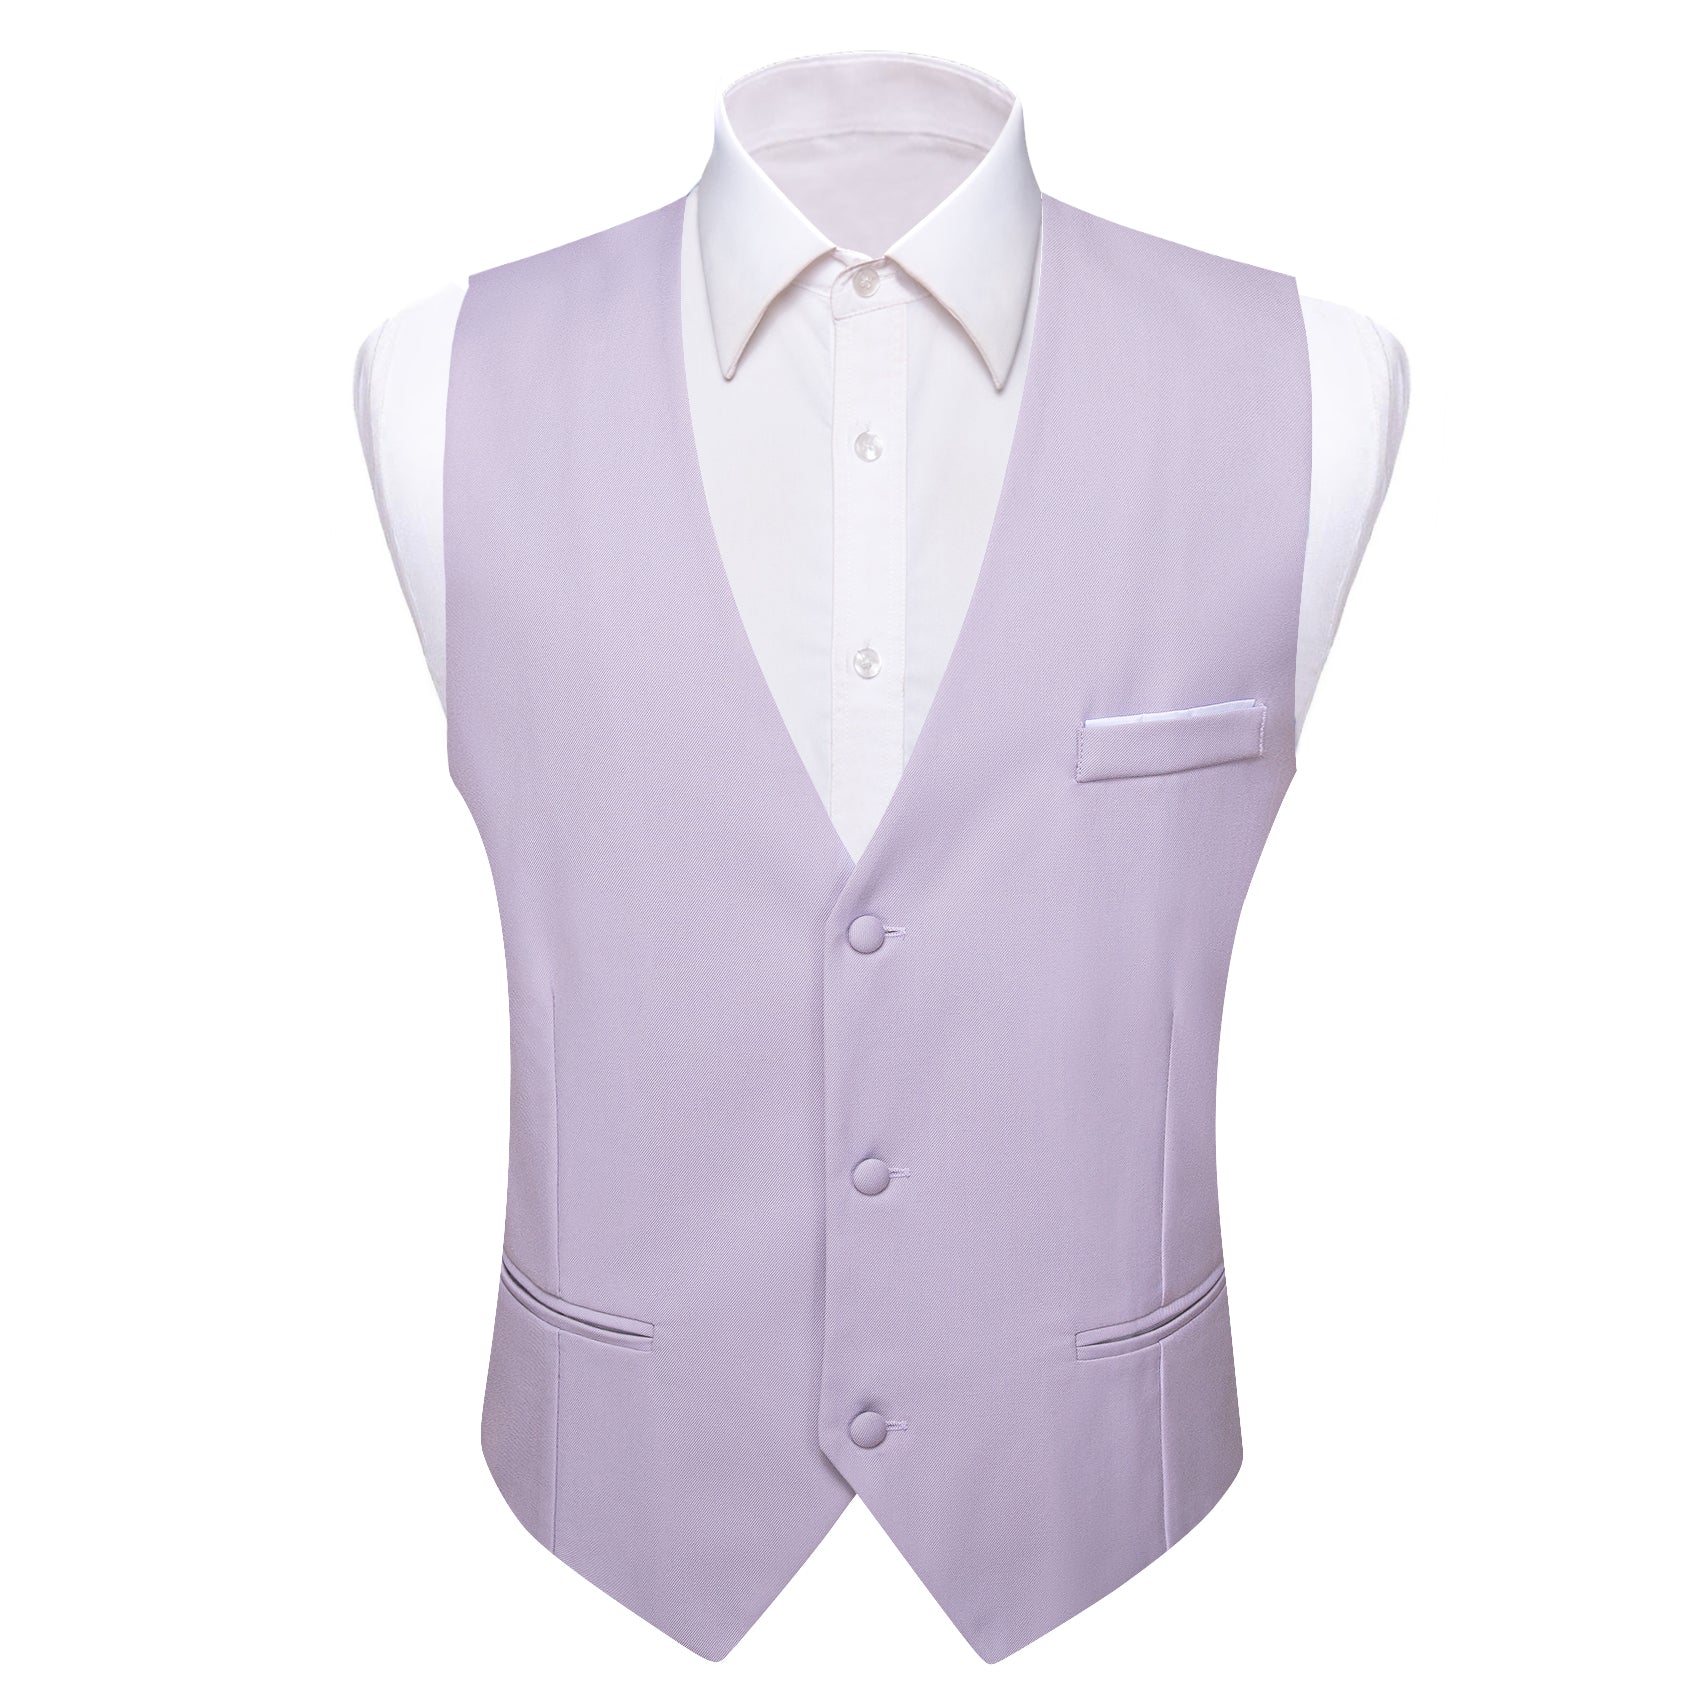 Barry.wang Pale Lilac Solid Business Vest Suit